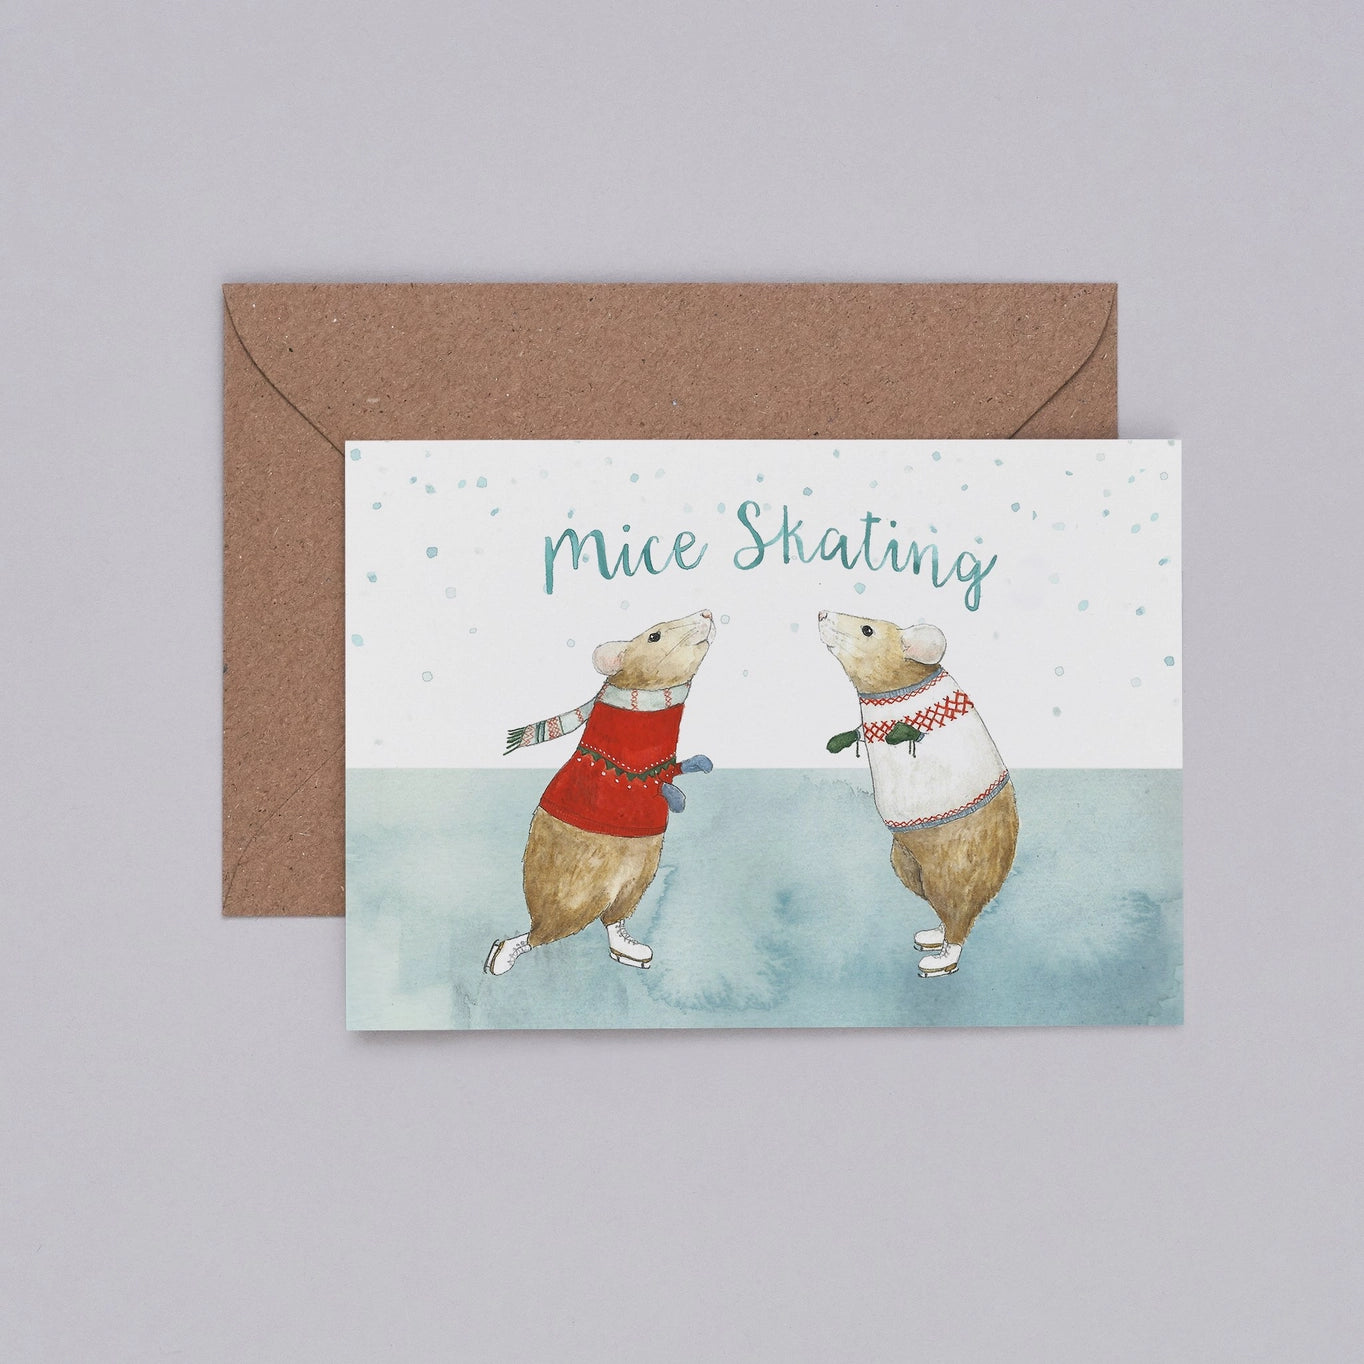 Mice Skating Greetings Card